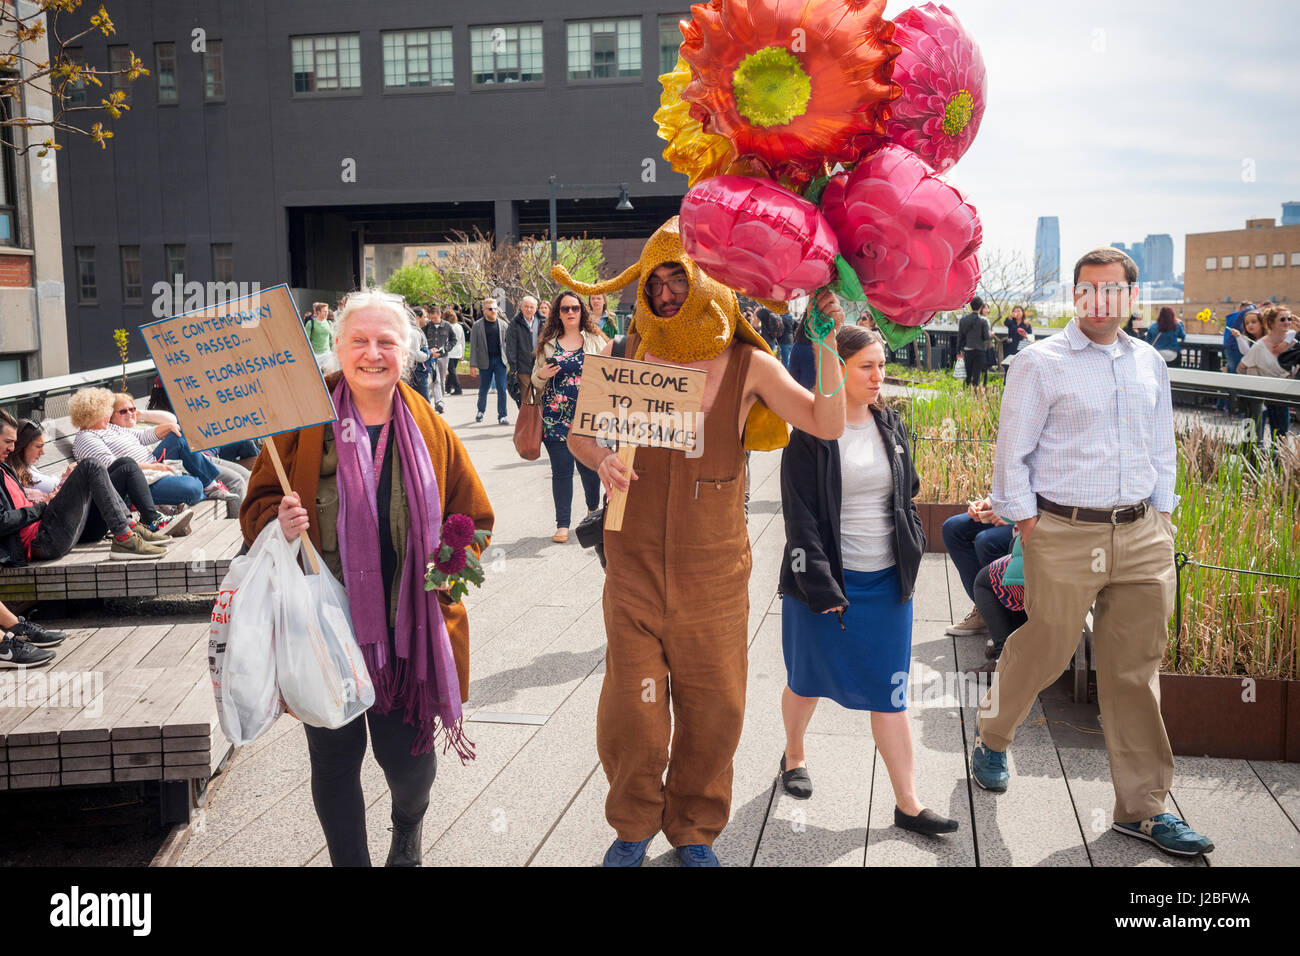 Die brasilianische Künstlerin, André Feliciano, Recht, unterstützt bekannt als die "Kunst-Gärtner" Spaziergänge auf der High Line Park in New York Künstlerin Nancy Prusinowski, links, Sonntag, 23. April 2017 Verteilung von Luftballons und Blumen, Passanten in seinem Performance-Kunst-Stück, die Floraissance-Parade. Die Floraissance ist eine Kunstrichtung, erstellt von Feliciano basiert auf der Idee, dass zeitgenössische kann nicht beschreiben, Kunst nicht mehr und wir Kunst Einzug in die nächste Phase, wie Blumen, in der Floraissance wächst. (© Richard B. Levine) Stockfoto